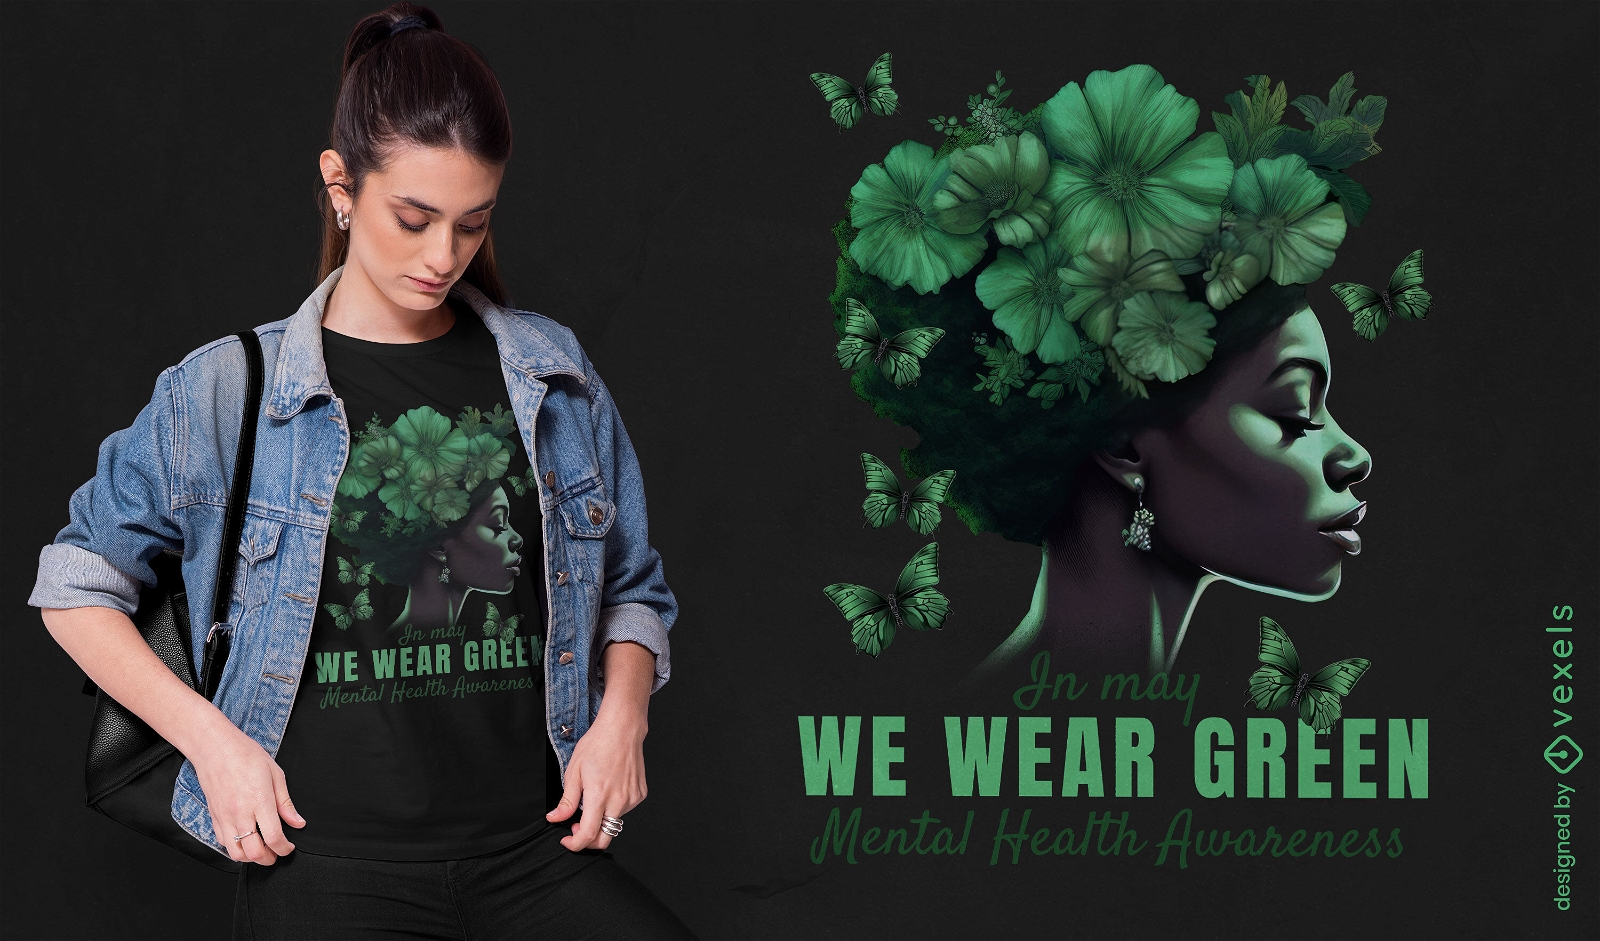 Dise?o de camiseta verde de conciencia de salud mental.